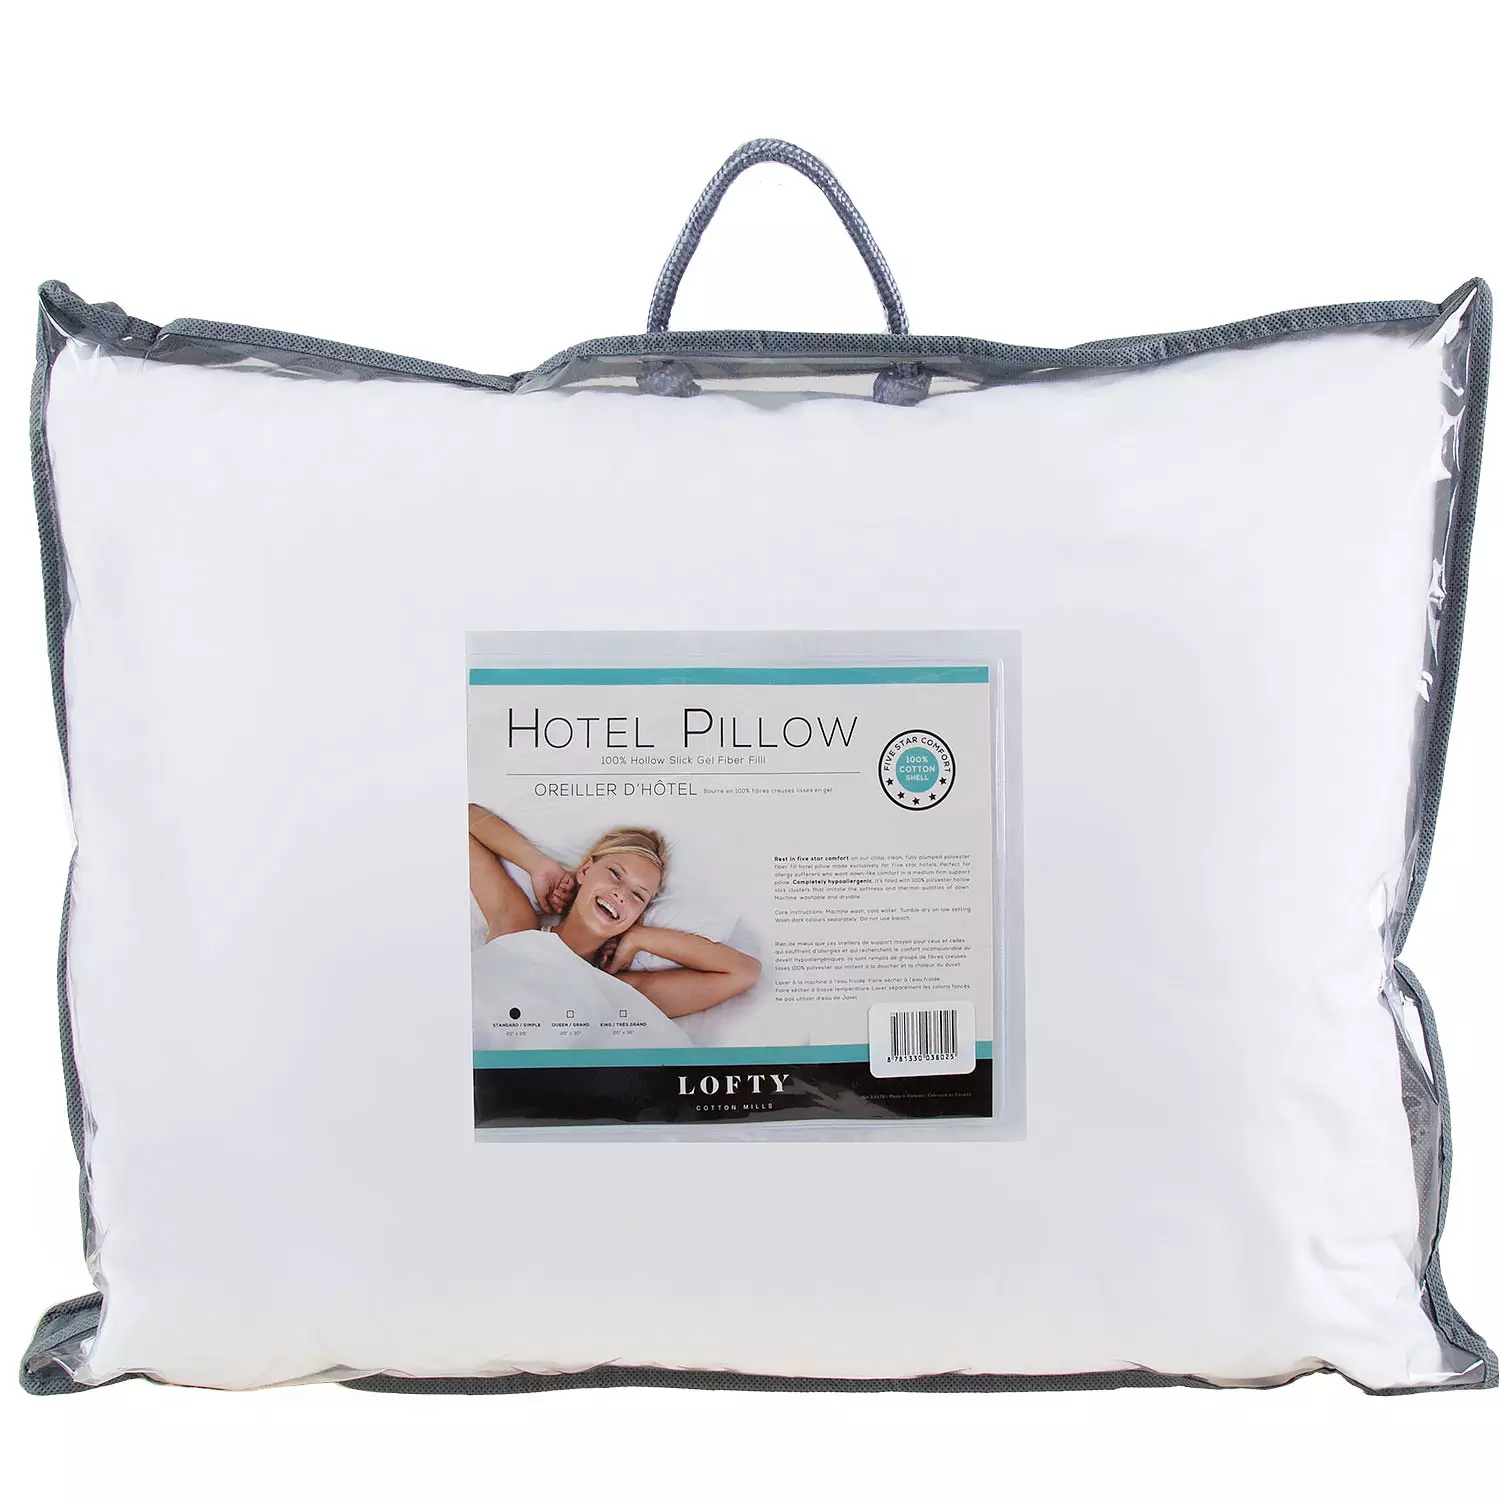 Lofty, hotel pillow, 20"x26" - standard